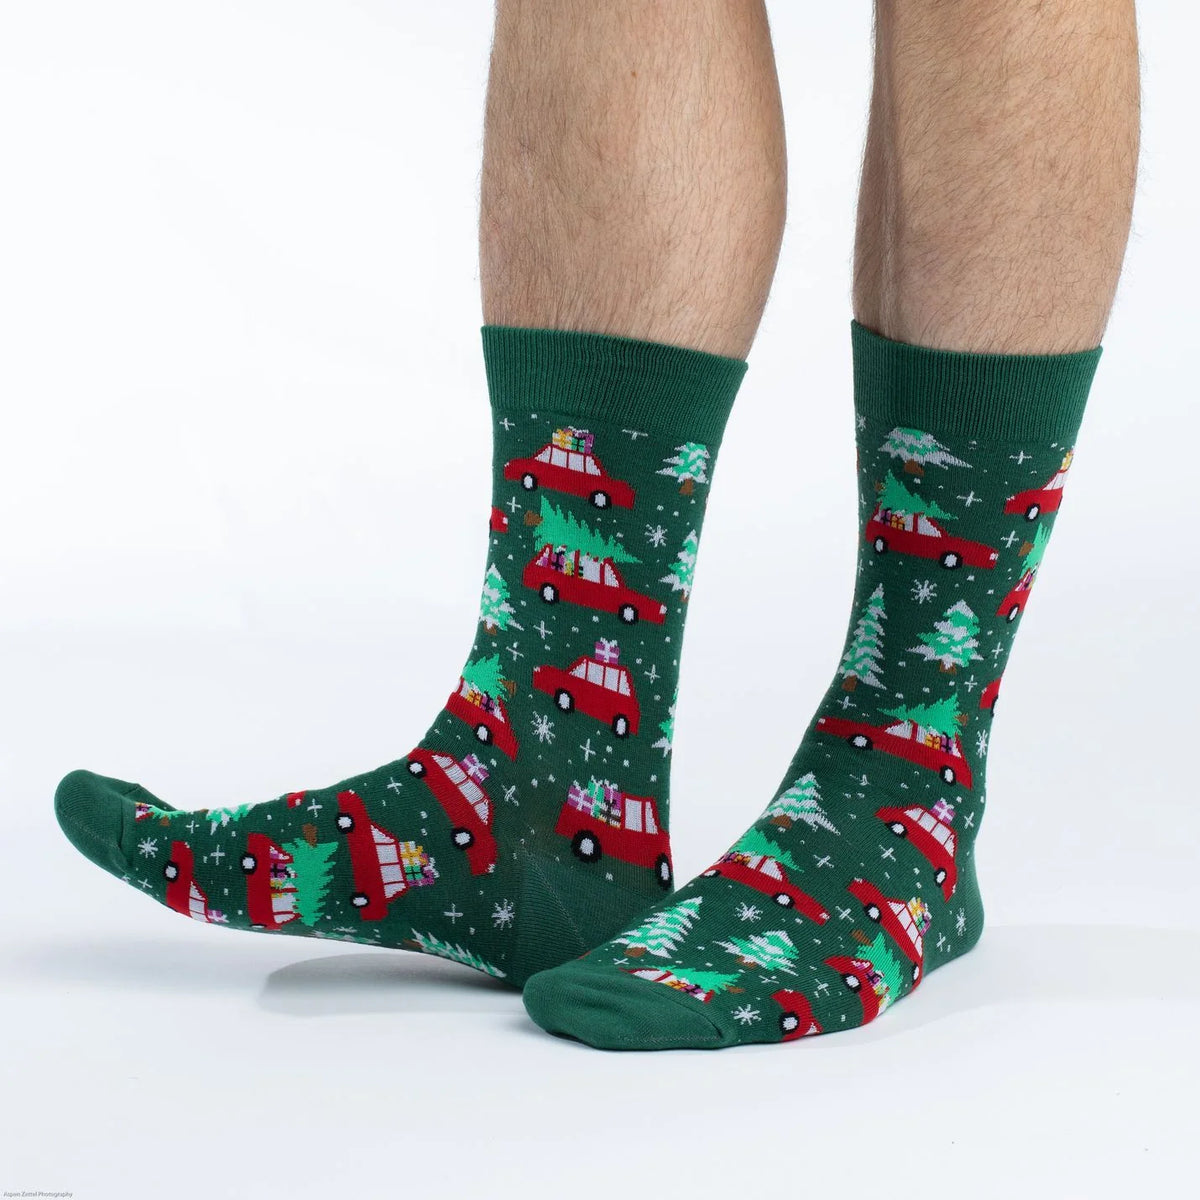 Good Luck Sock - Christmas Tree Socks